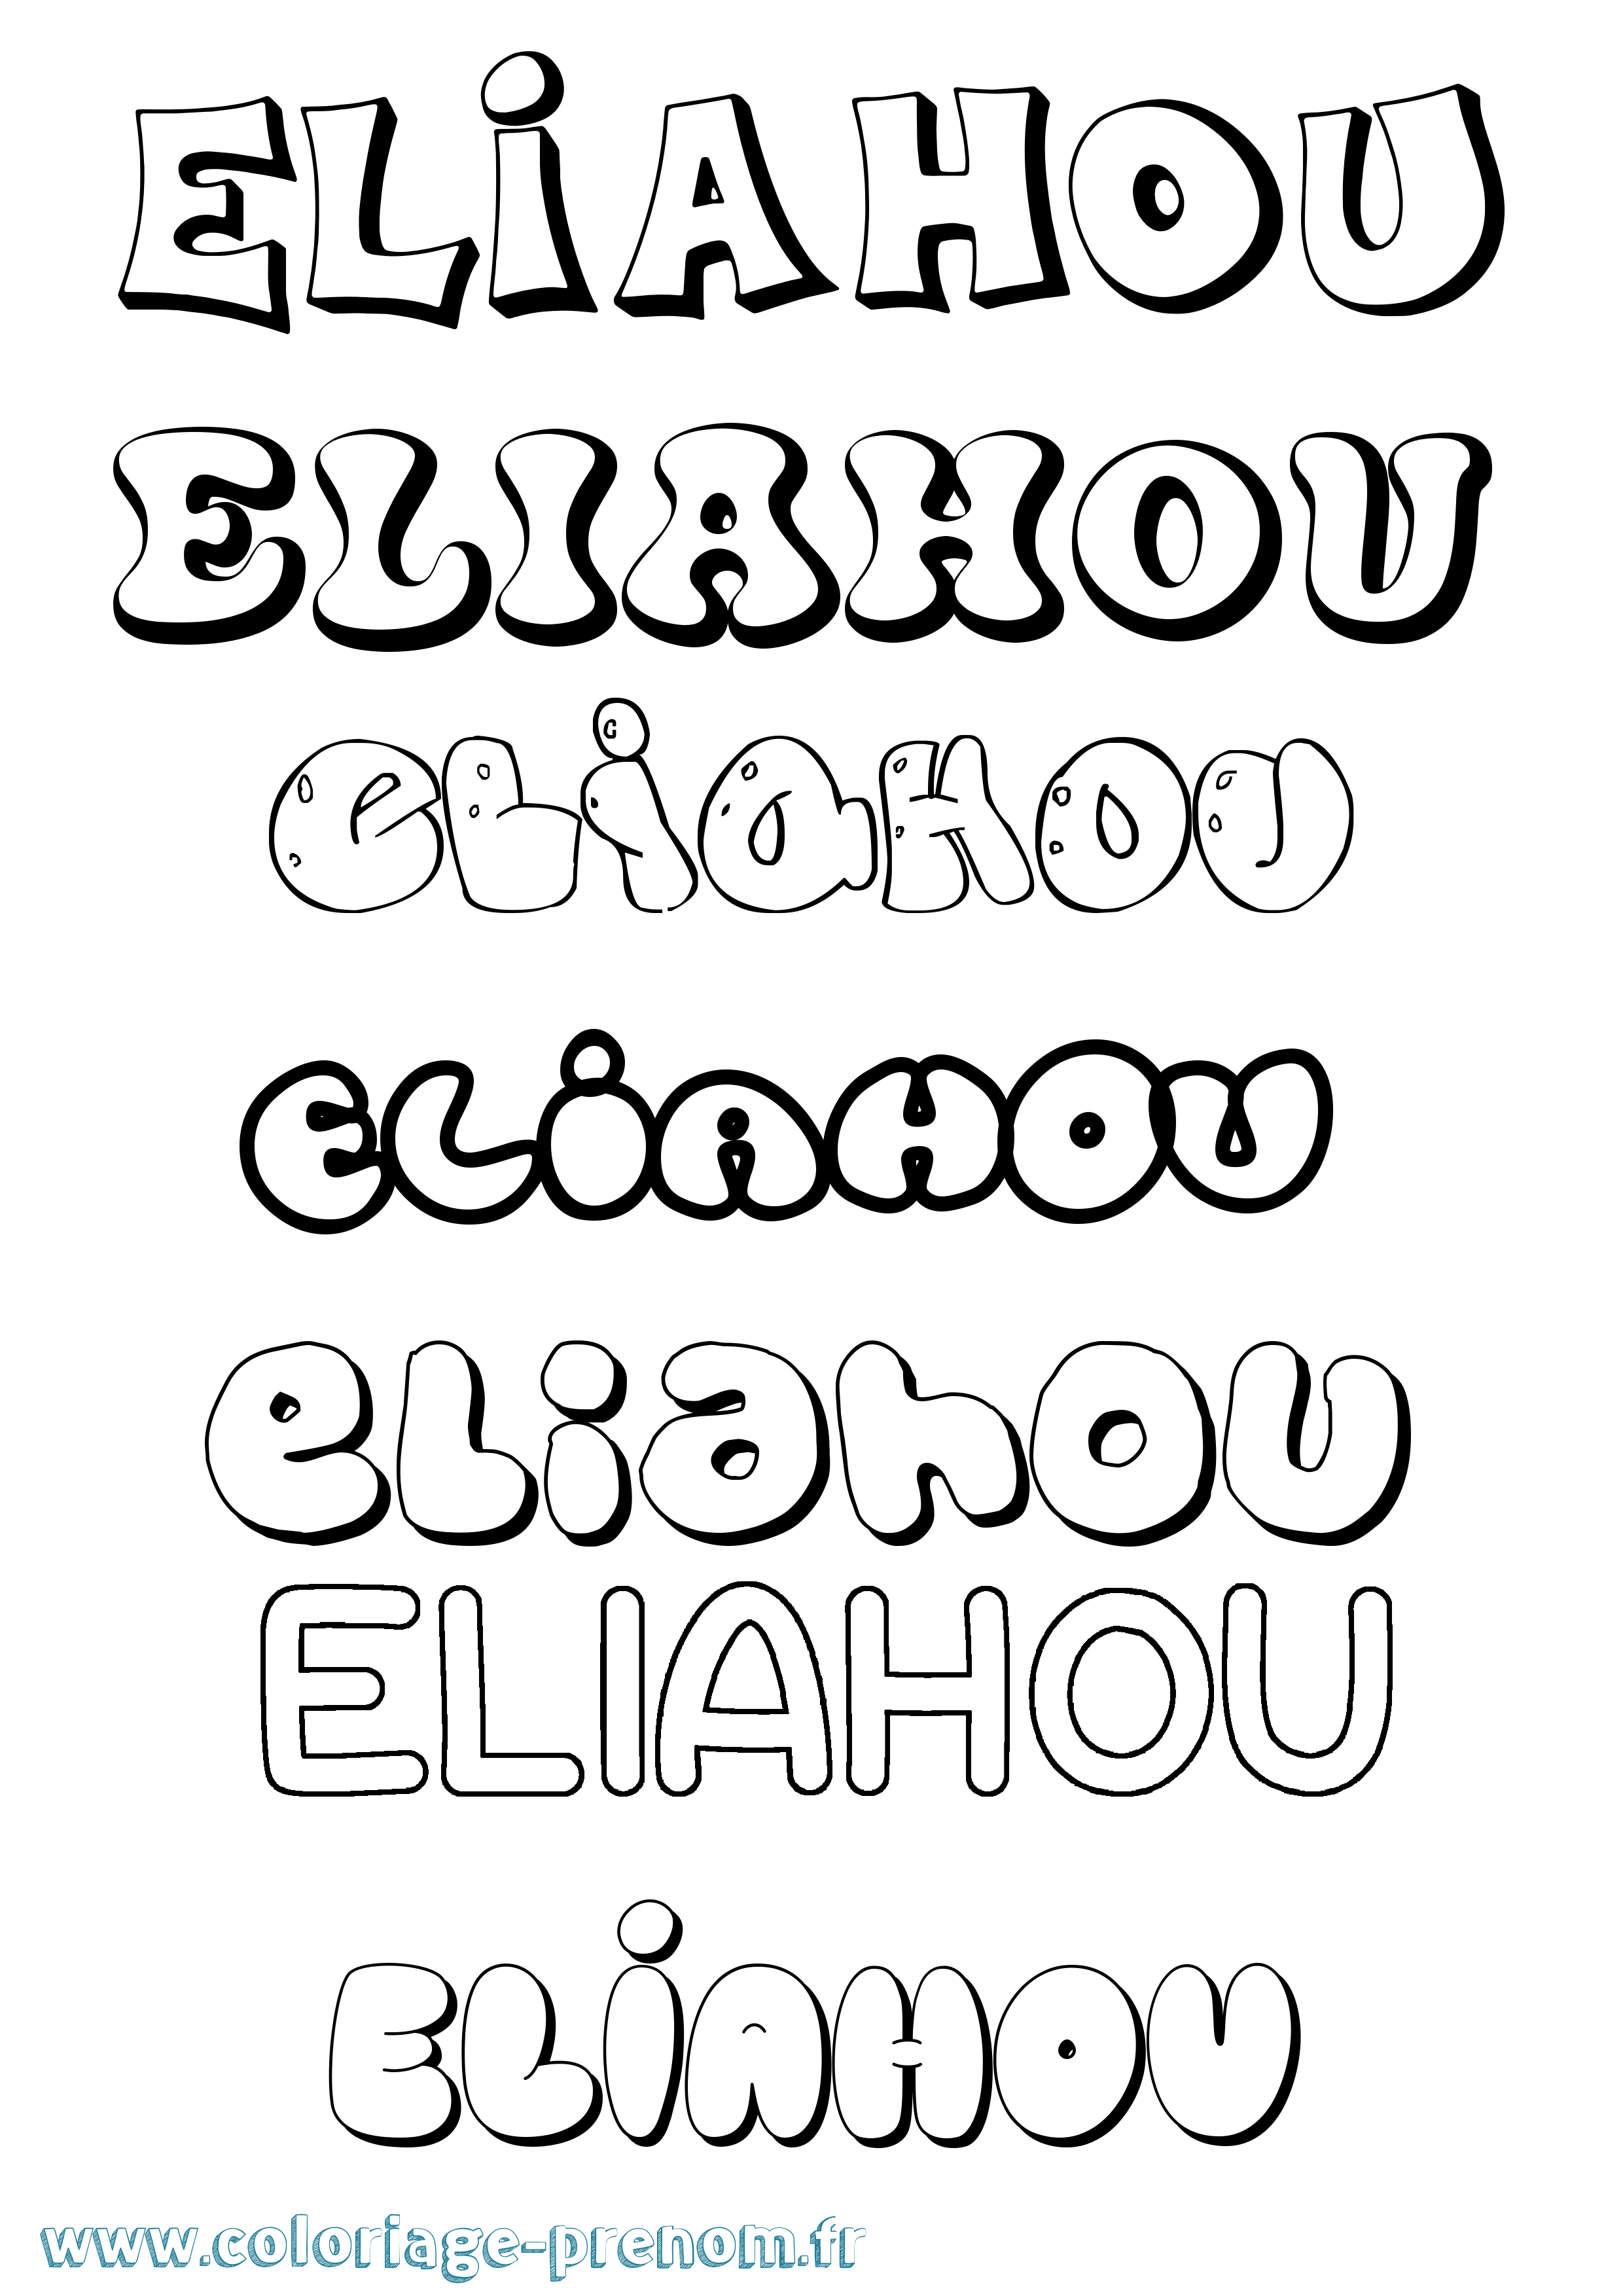 Coloriage prénom Eliahou